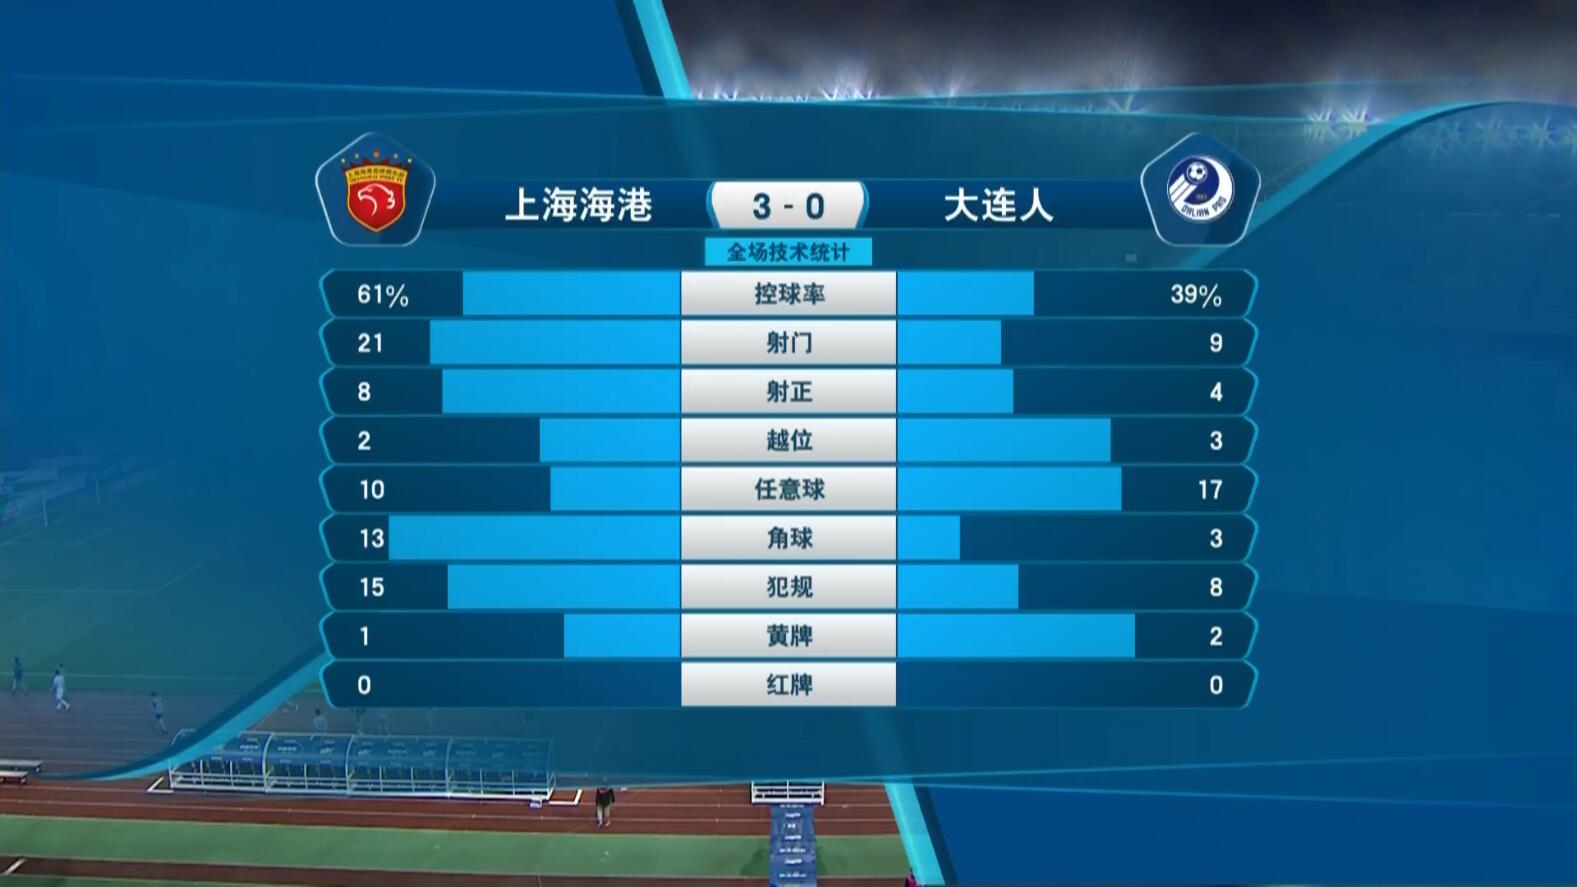 上海港3-0大连人观众数据:出手次数21-9 角球次数13-3